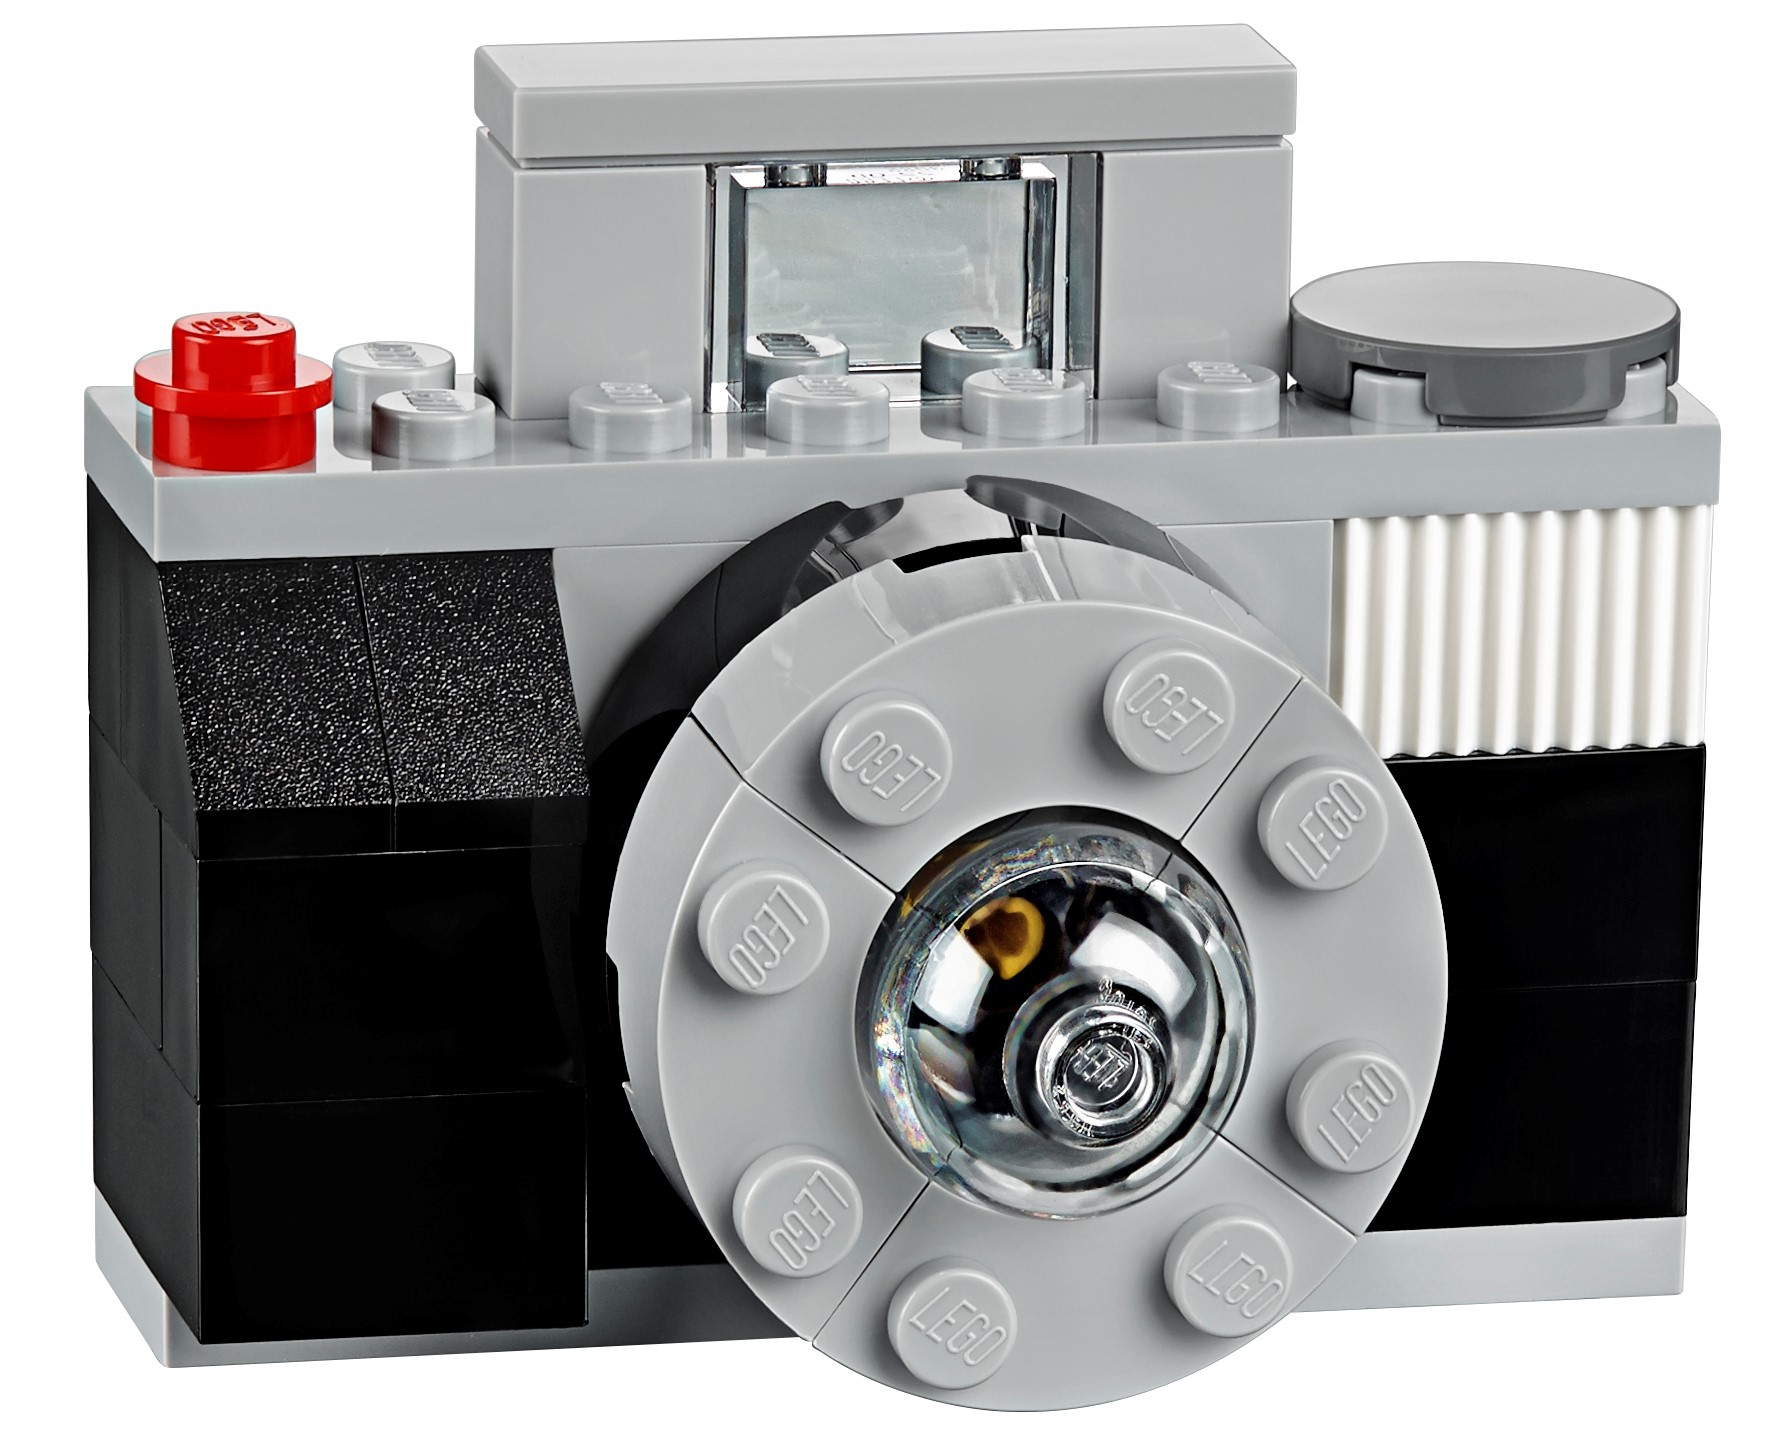 5 LEGO 10698 Classic Caja Ladrillos Creativos Grande 🧱 